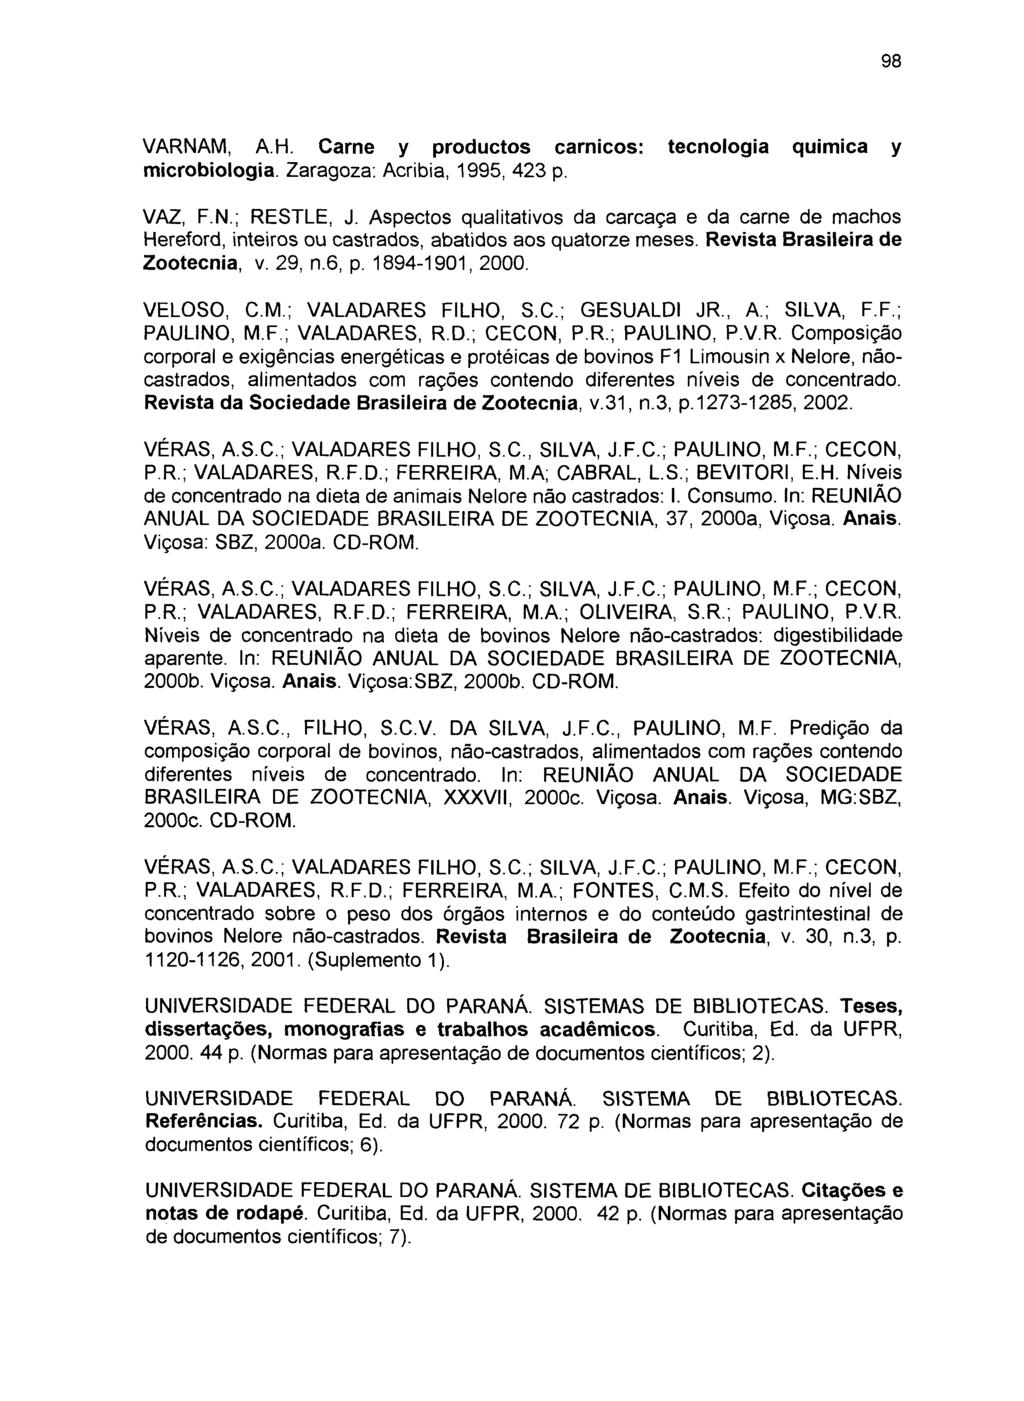 VARNAM, AH. Carne y productos carnicos: tecnologia quimica y microbiologia. Zaragoza: Acribia, 1995, 423 p. VAZ, F.N.; RESTLE, J.